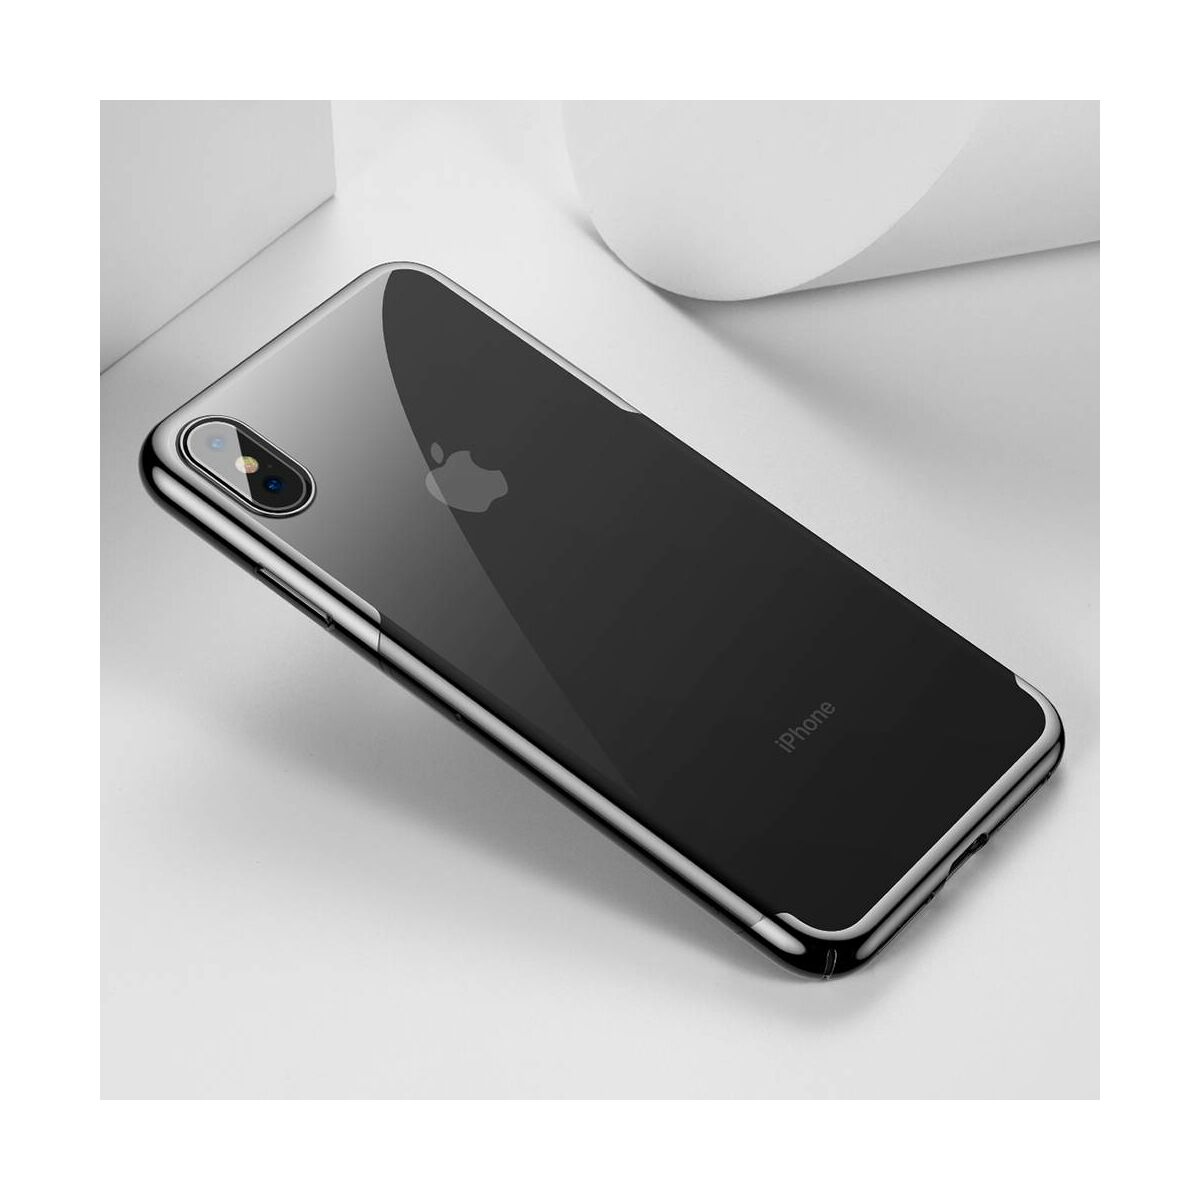 Kép 8/8 - Baseus iPhone XS Max tok, Glitter, fekete (WIAPIPH65-DW01)